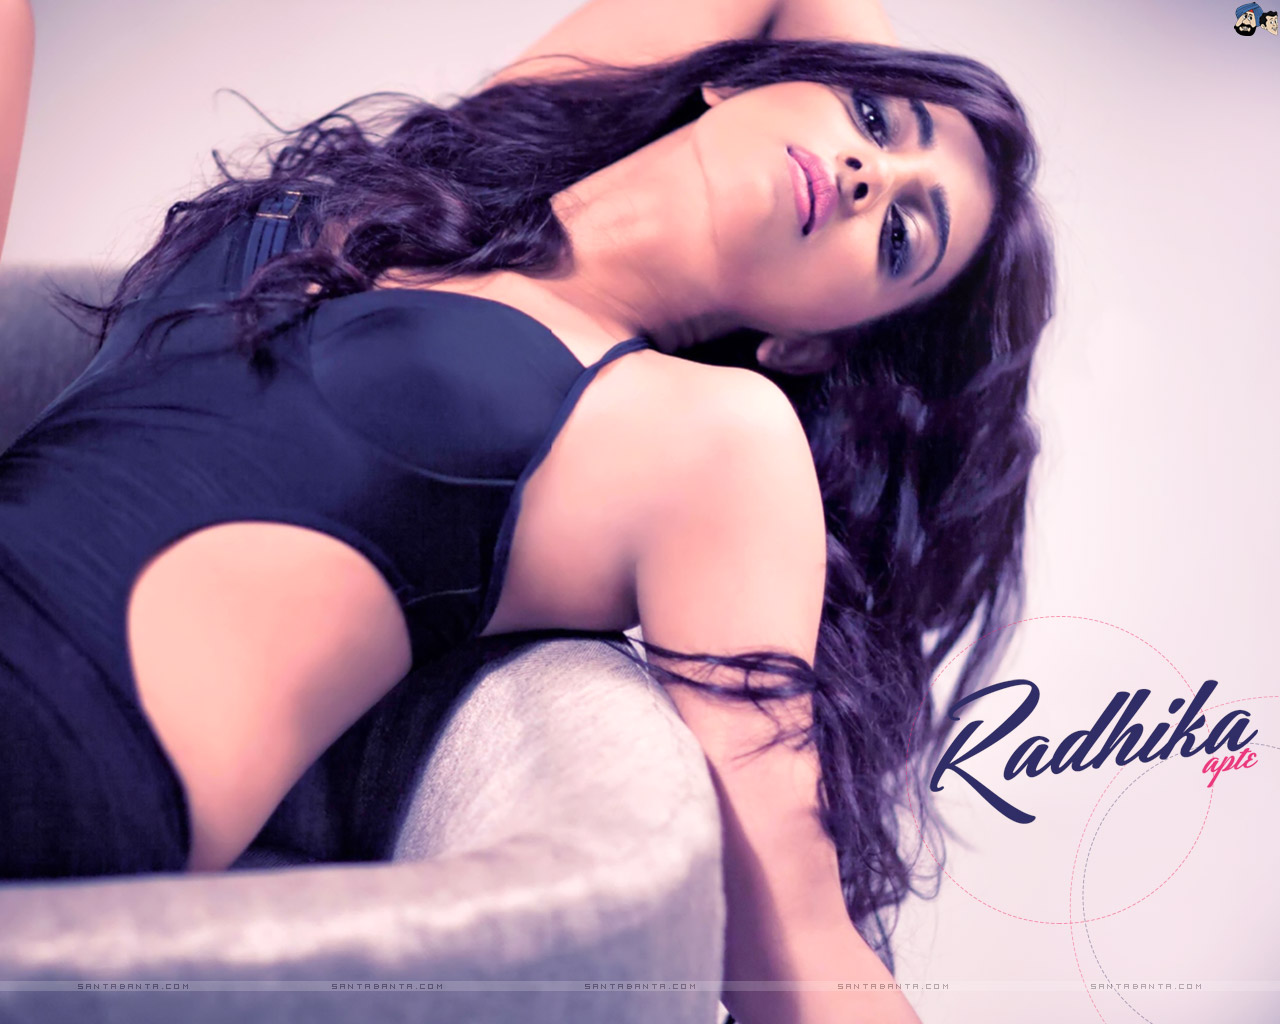 Indian Hot Actress Actress Radhika Apte Hot Sexy Photos Ha